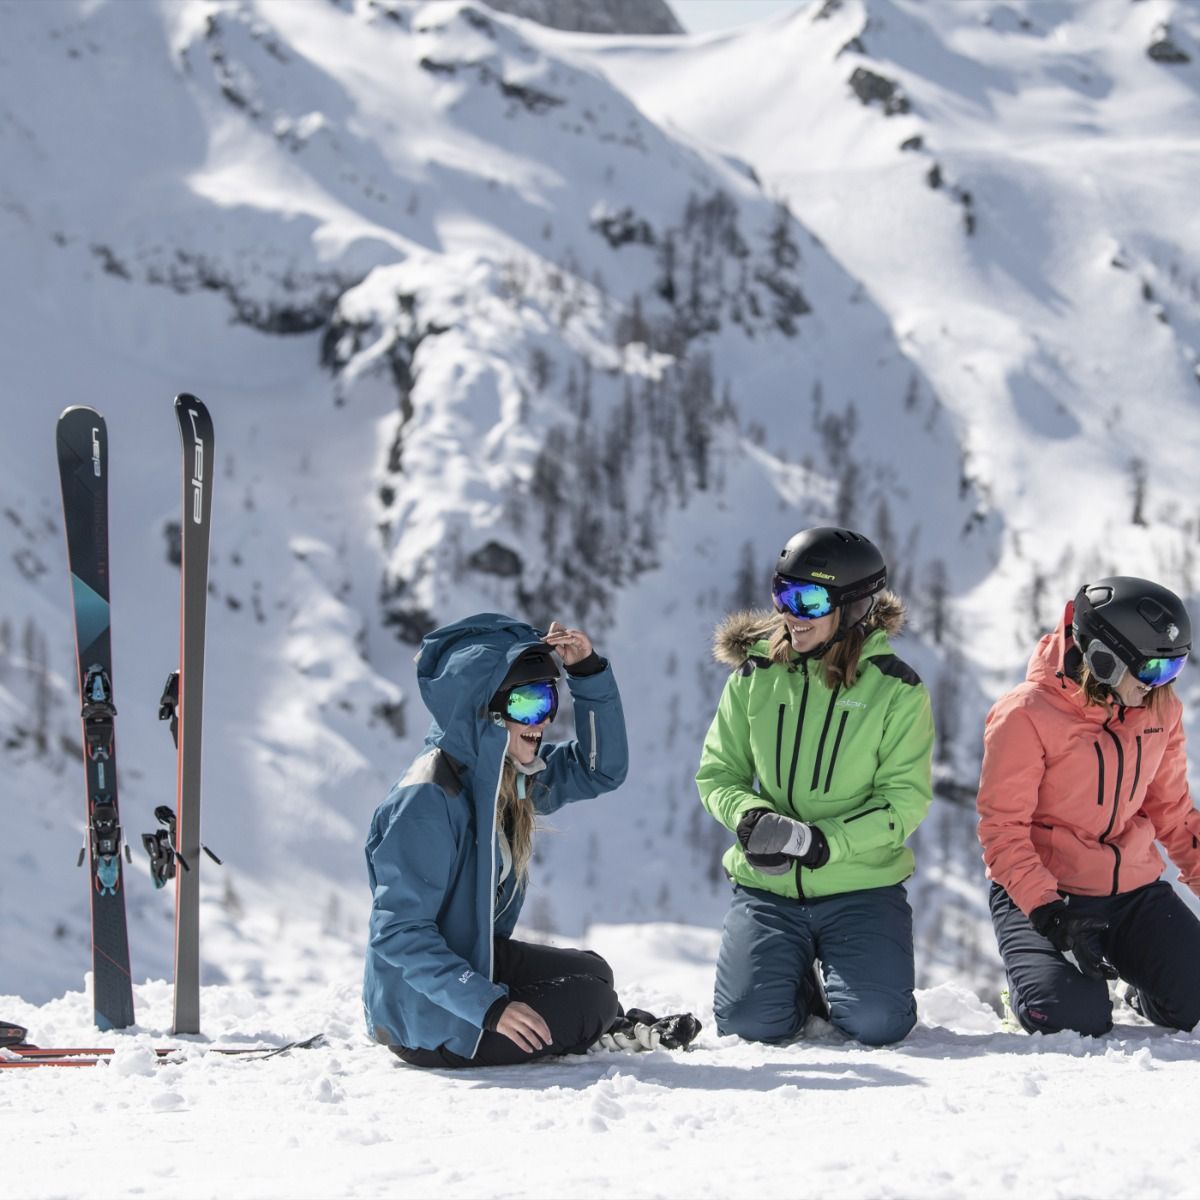 Горные лыжи с креплениями ELAN 2019-20 Insomnia PowerShift + ELW 11 Shift